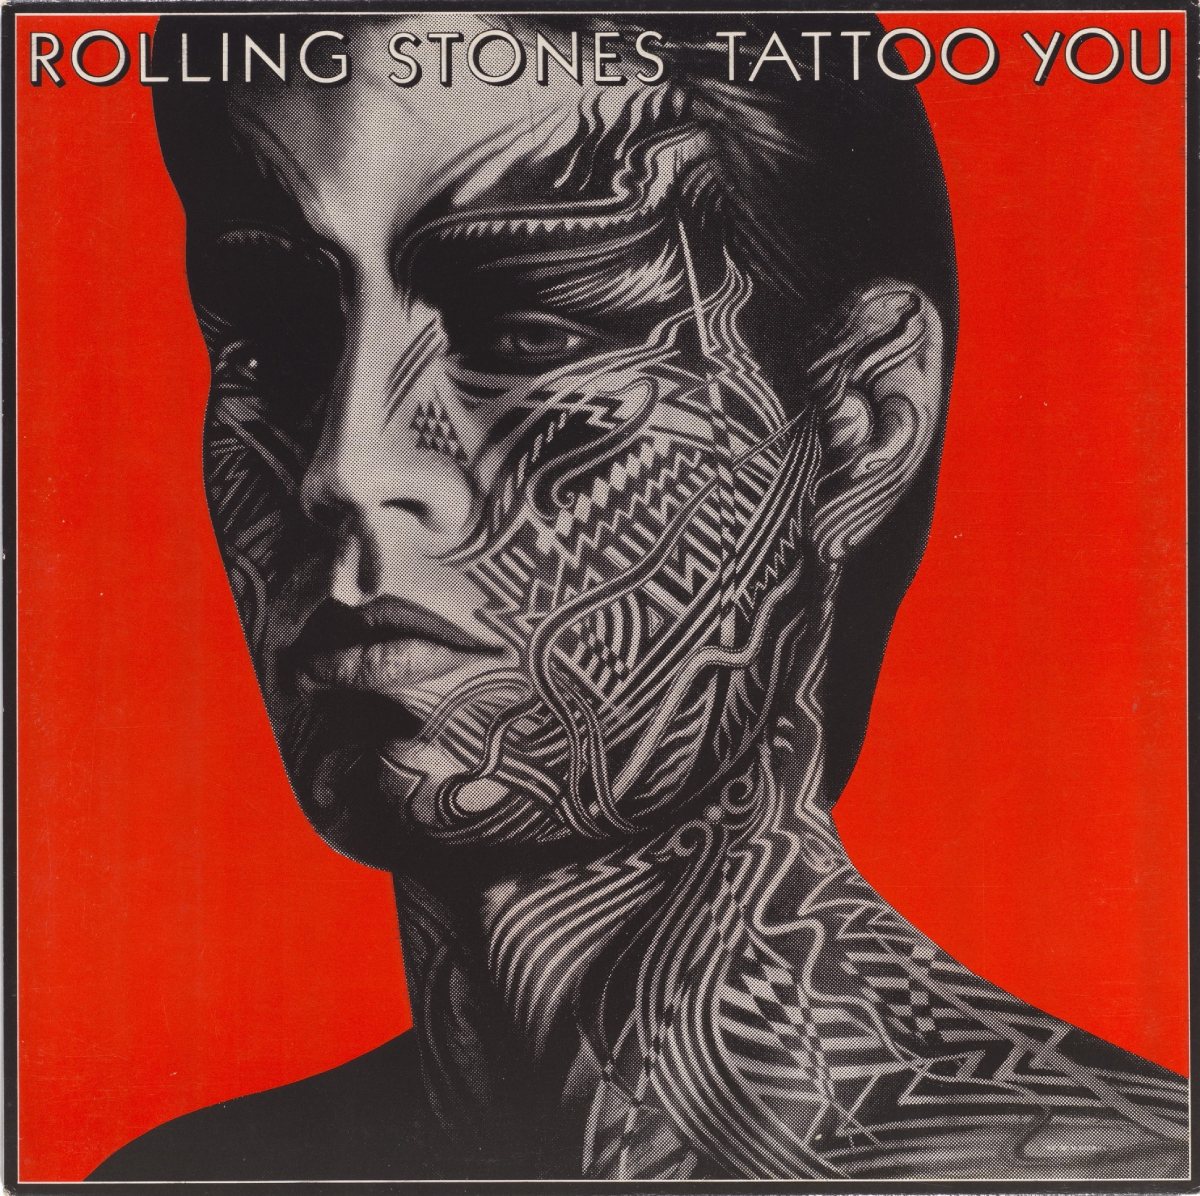 Capa do álbum 'Tattoo You' dos Rolling Stones